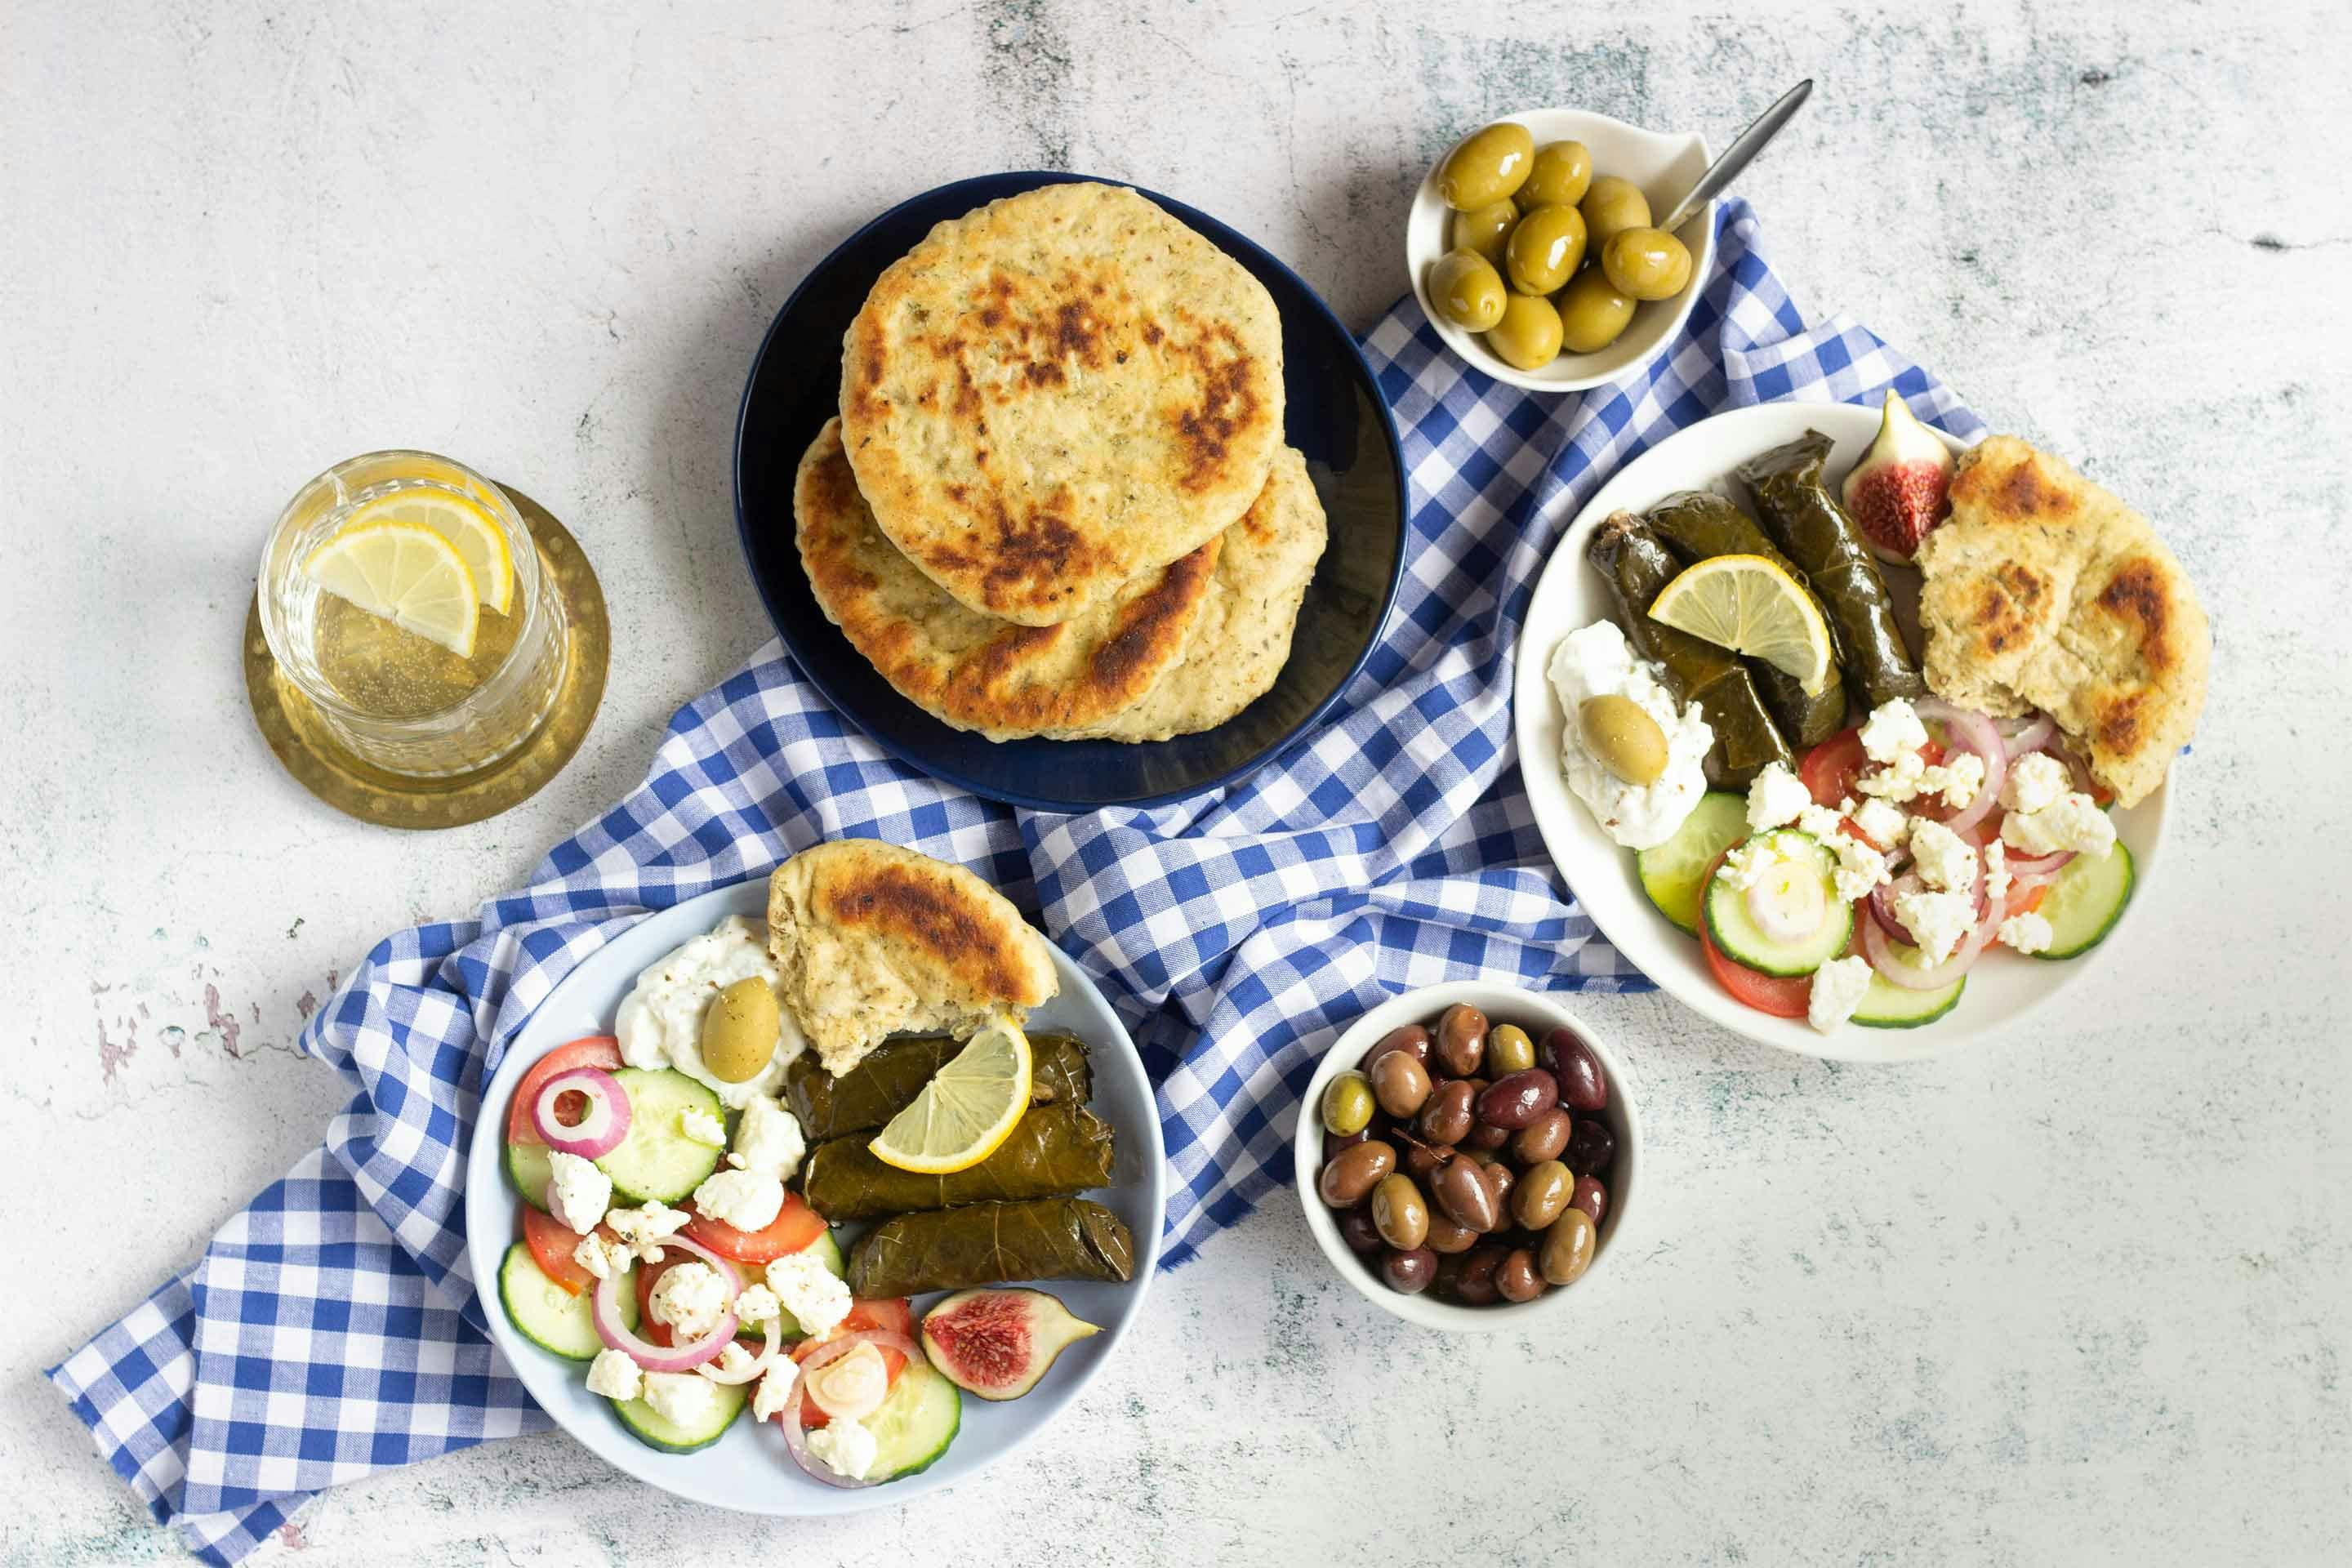 Griechisches Oliven-Knoblauch-Pfannenbrot mit zwei Mezze-Teller und Oliven.